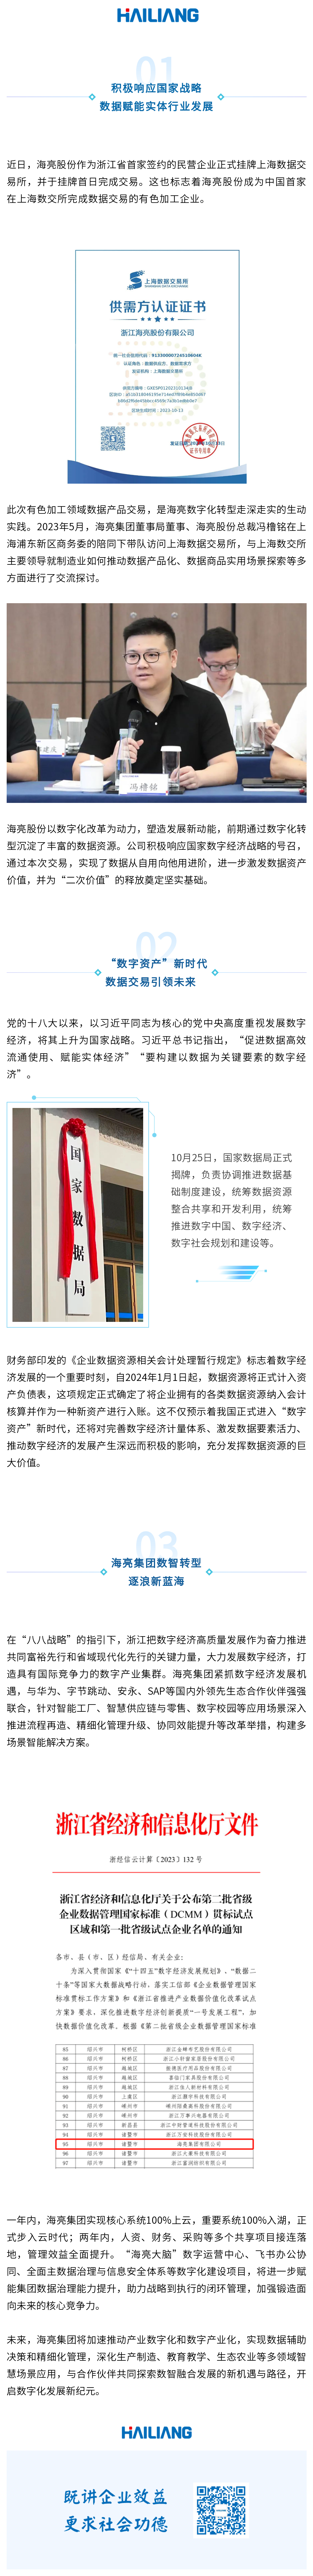 浙江民企“首家” | 海亮股份在上海数据交易所成功数据资产挂牌交易